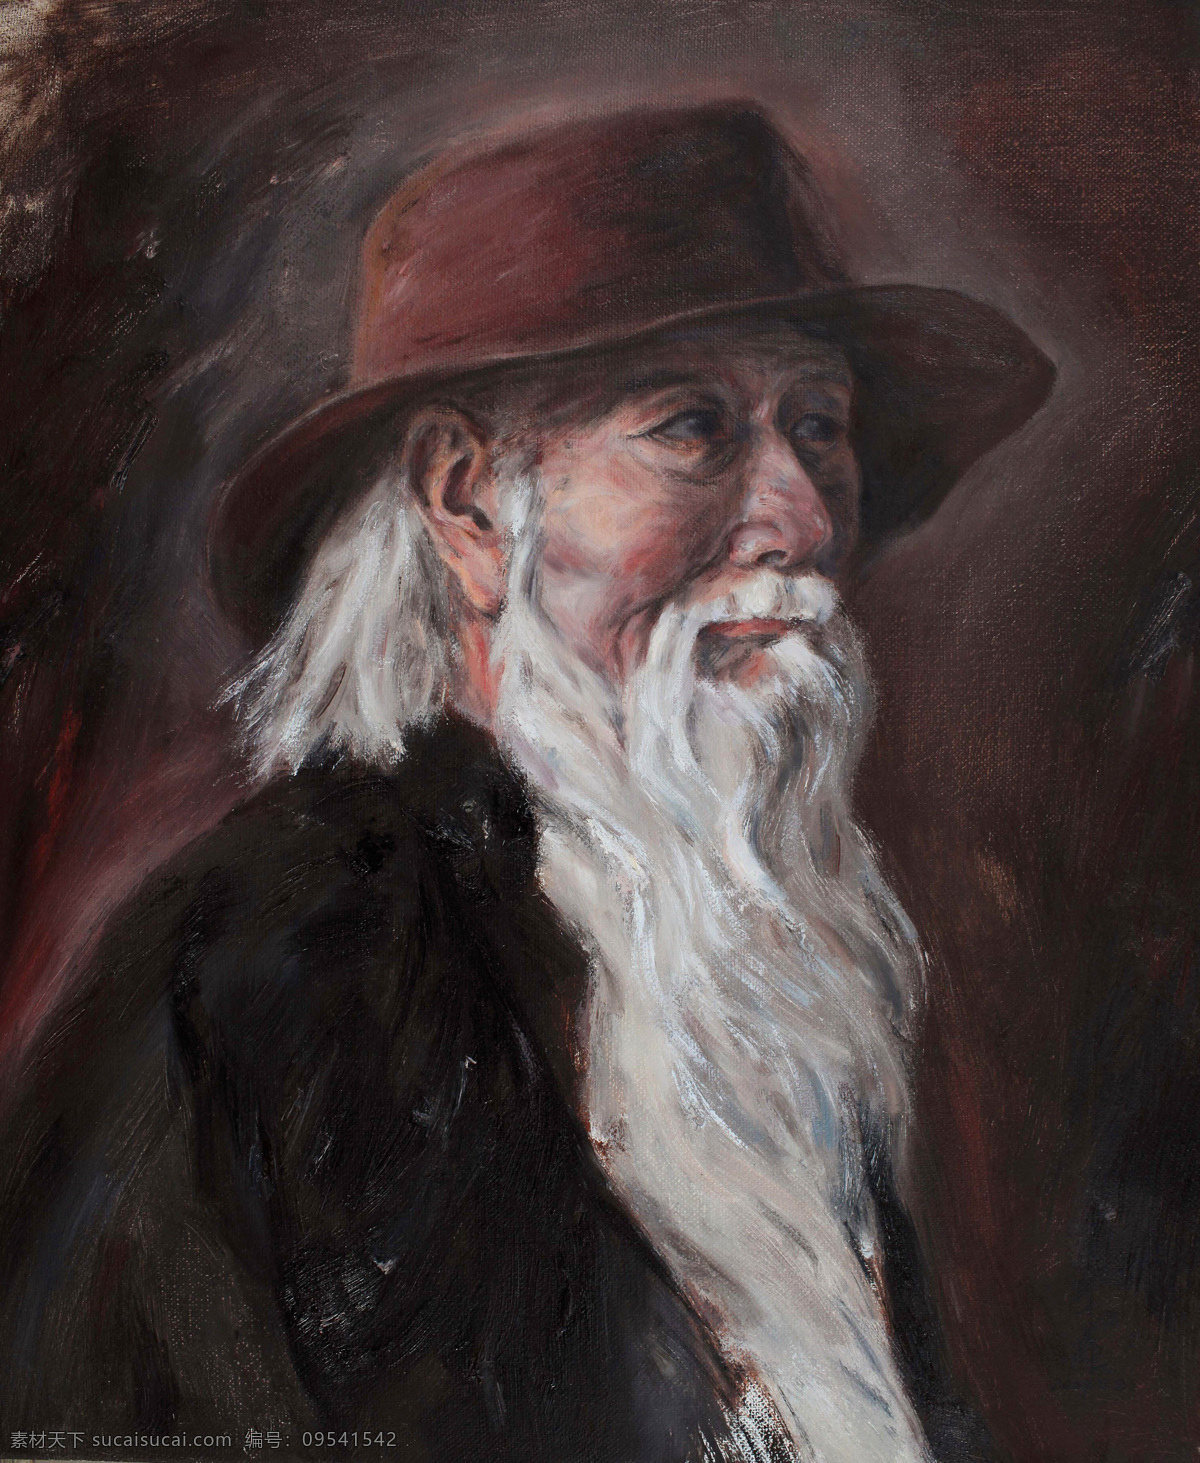 老年人 油画 肖像 老人油画肖像 白 胡子 老人 人物肖像画 东方 人物 写生 油画艺术 绘画艺术 装饰画 书画文字 文化艺术